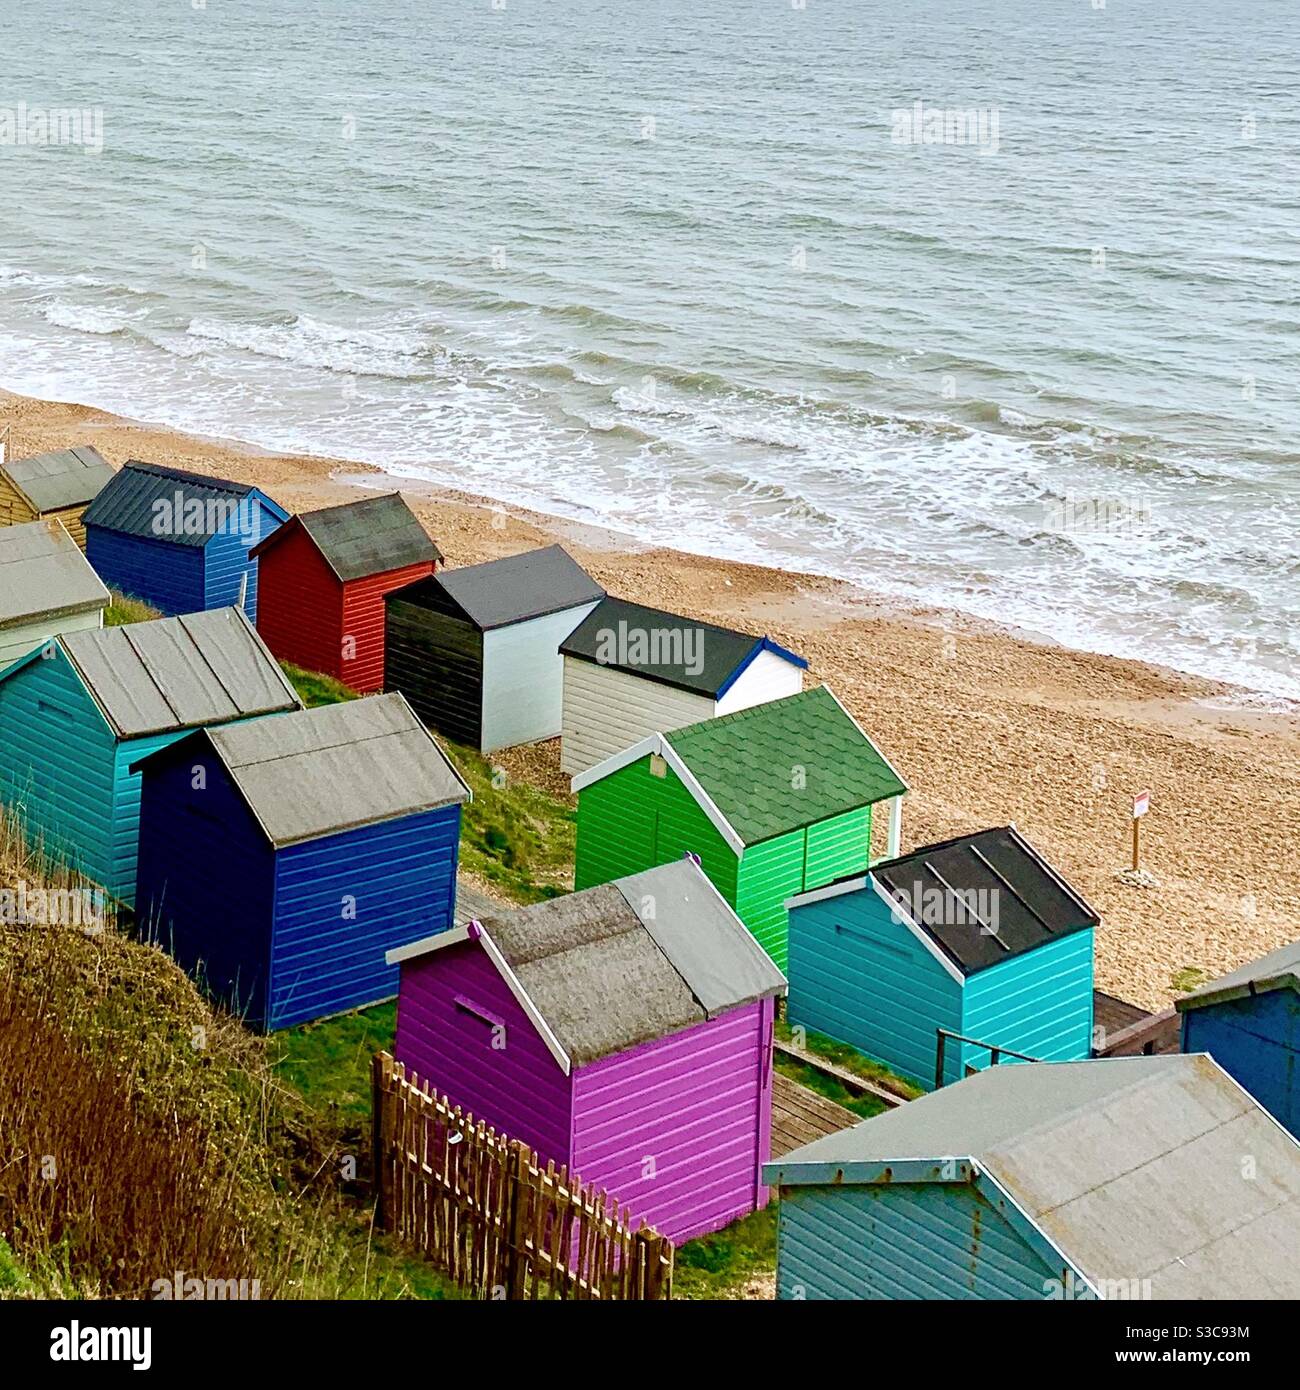 Una jolly giustapposizione di casette da spiaggia dai colori vivaci e casuali sulla costa dell'Hampshire nel Regno Unito Foto Stock